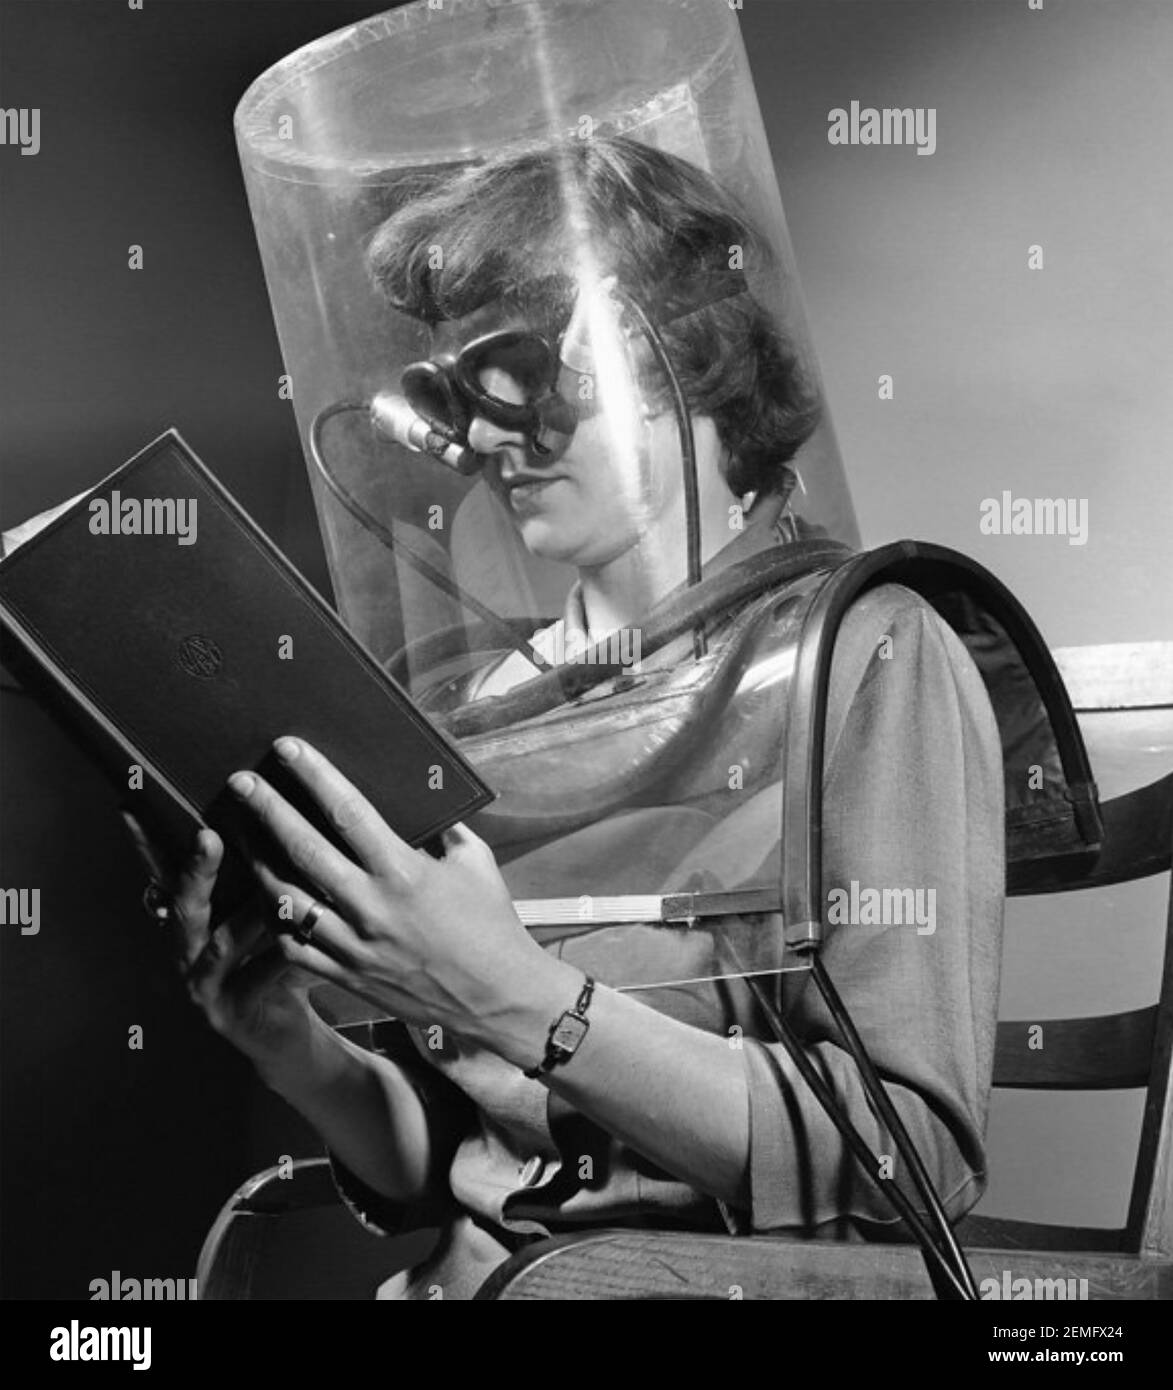 PROVA DI SMOG 1949. Un assistente di laboratorio dello Stanford Research Institute in California partecipa a un "test di lampeggiamento" come parte di un progetto per studiare gli effetti dello smog. Foto Stock